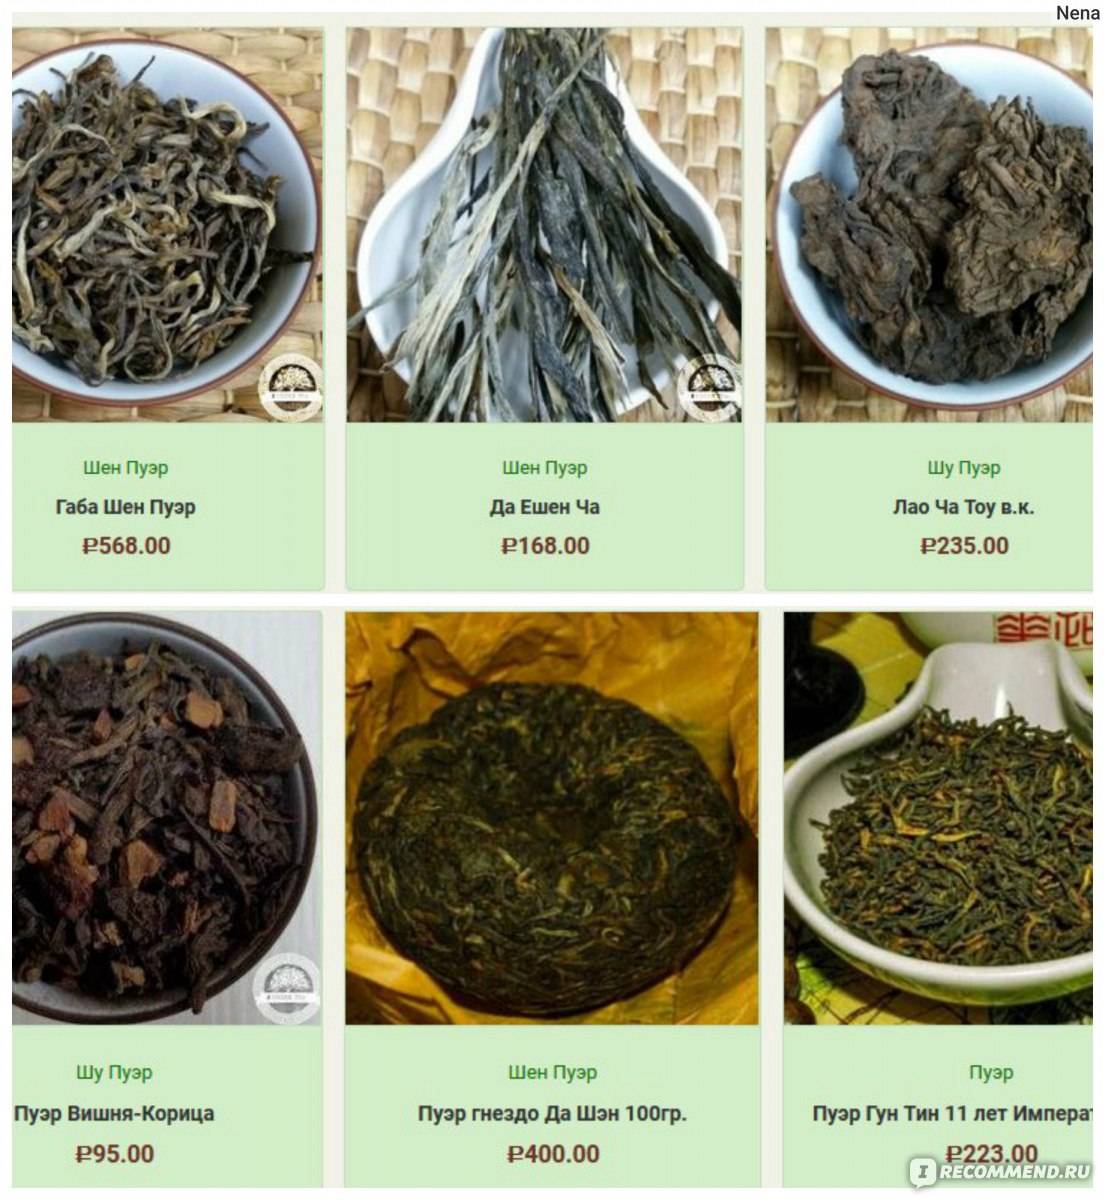 Чай байховый, его история и виды. 5 популярных видов байхового чая